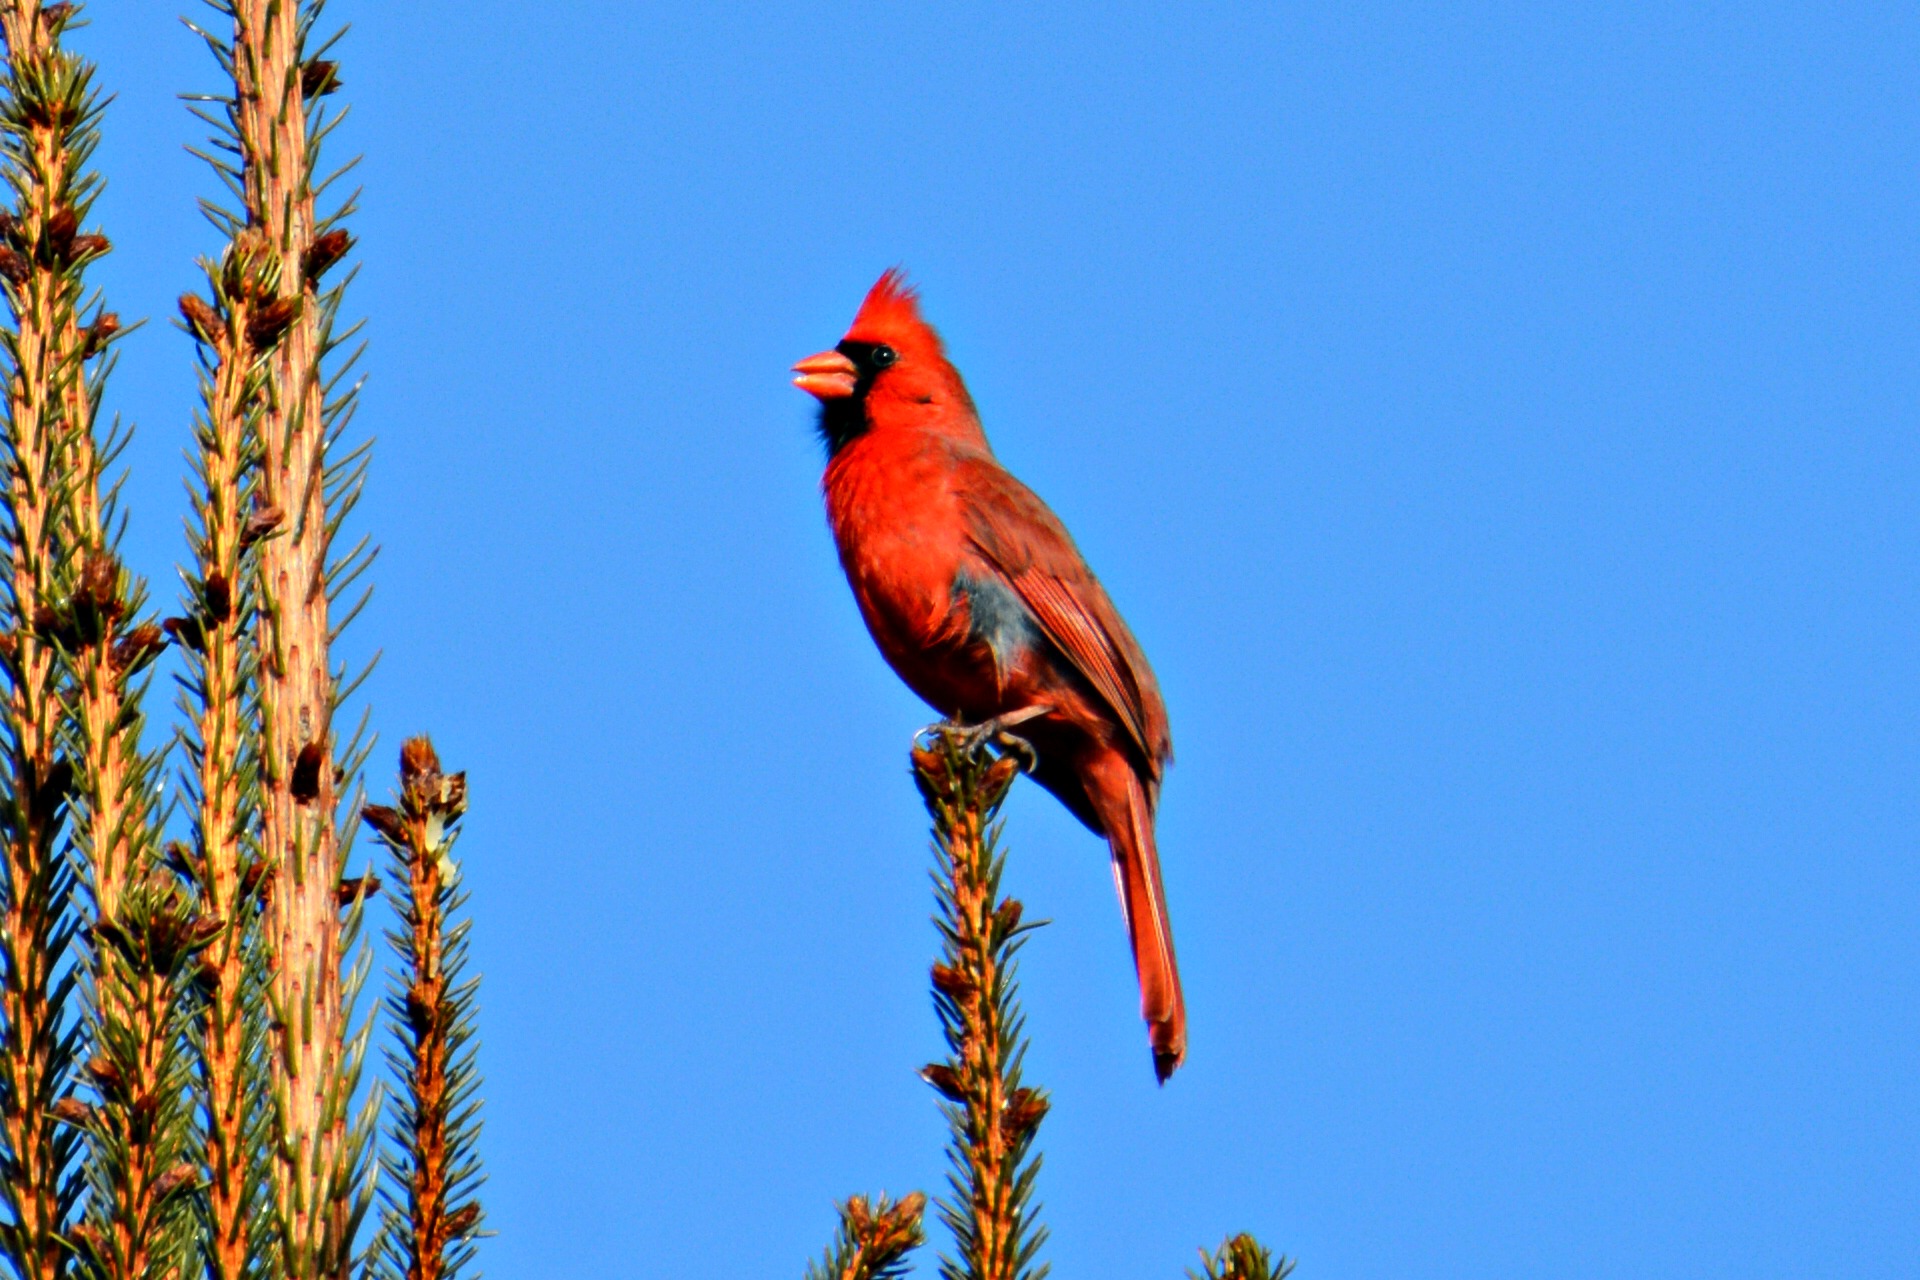 Northern cardinal - Northern cardinal bird